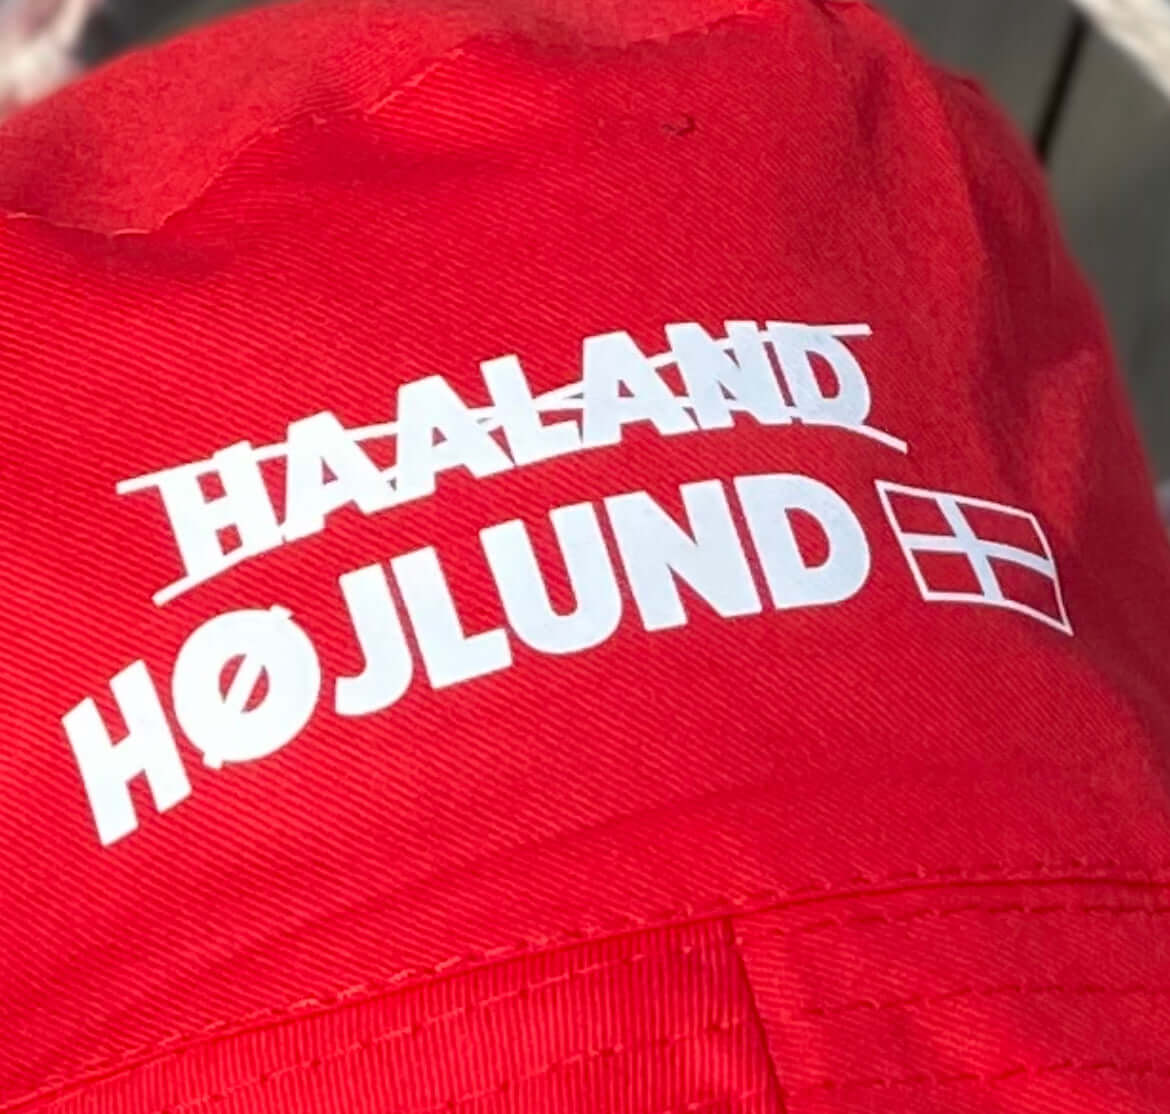 Højlund X Haaland "Højlund i hatten" mobbare hatt